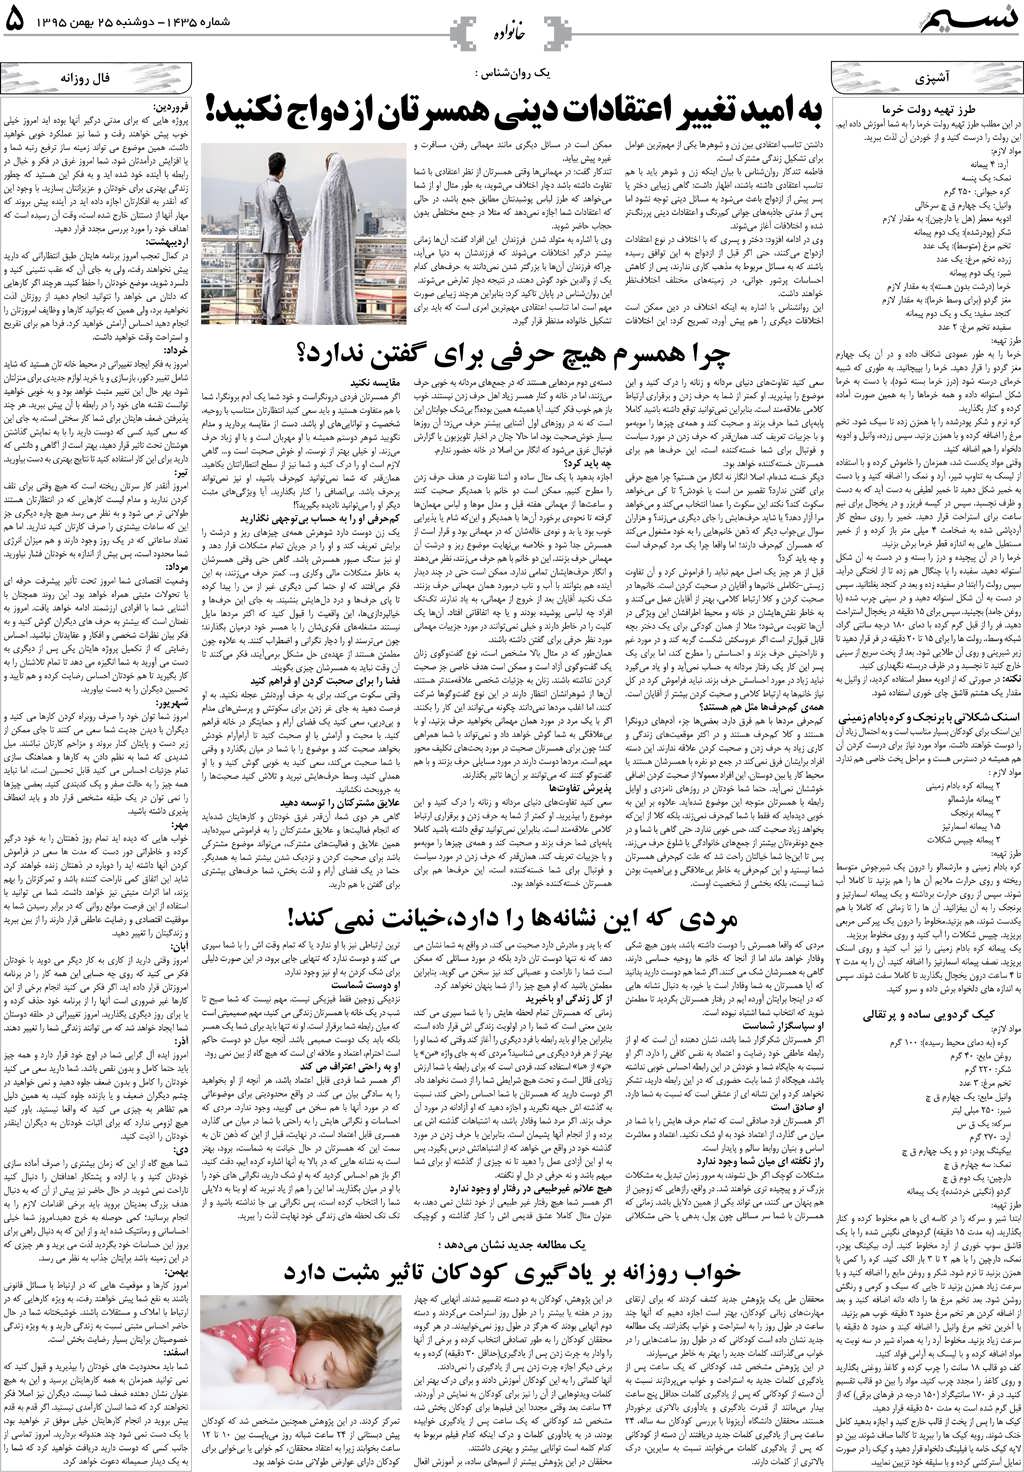 صفحه خانواده روزنامه نسیم شماره 1435